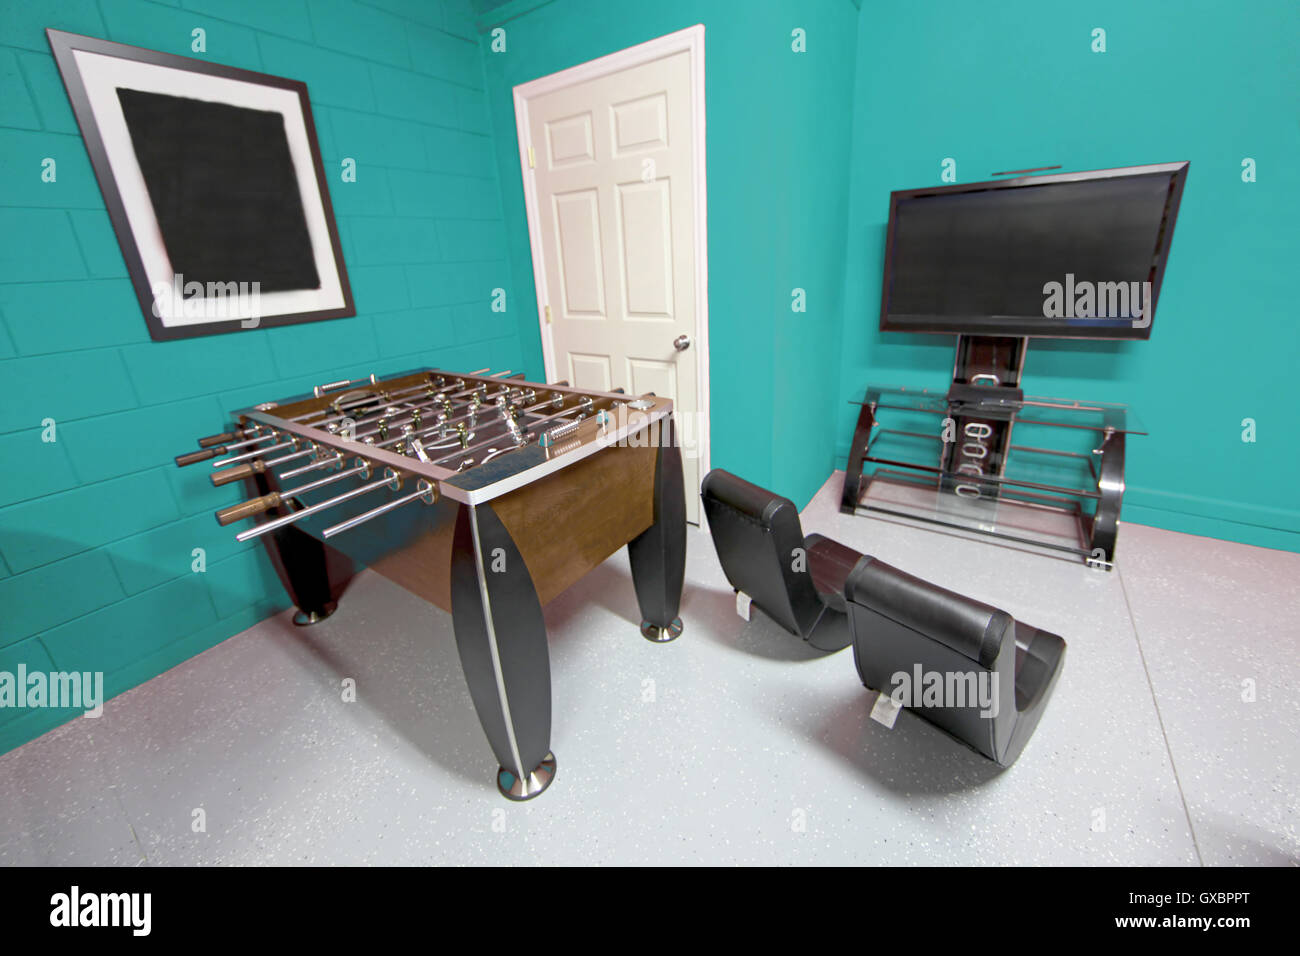 Une salle de jeux avec baby-foot, télévision et des jeux de chaises Banque D'Images